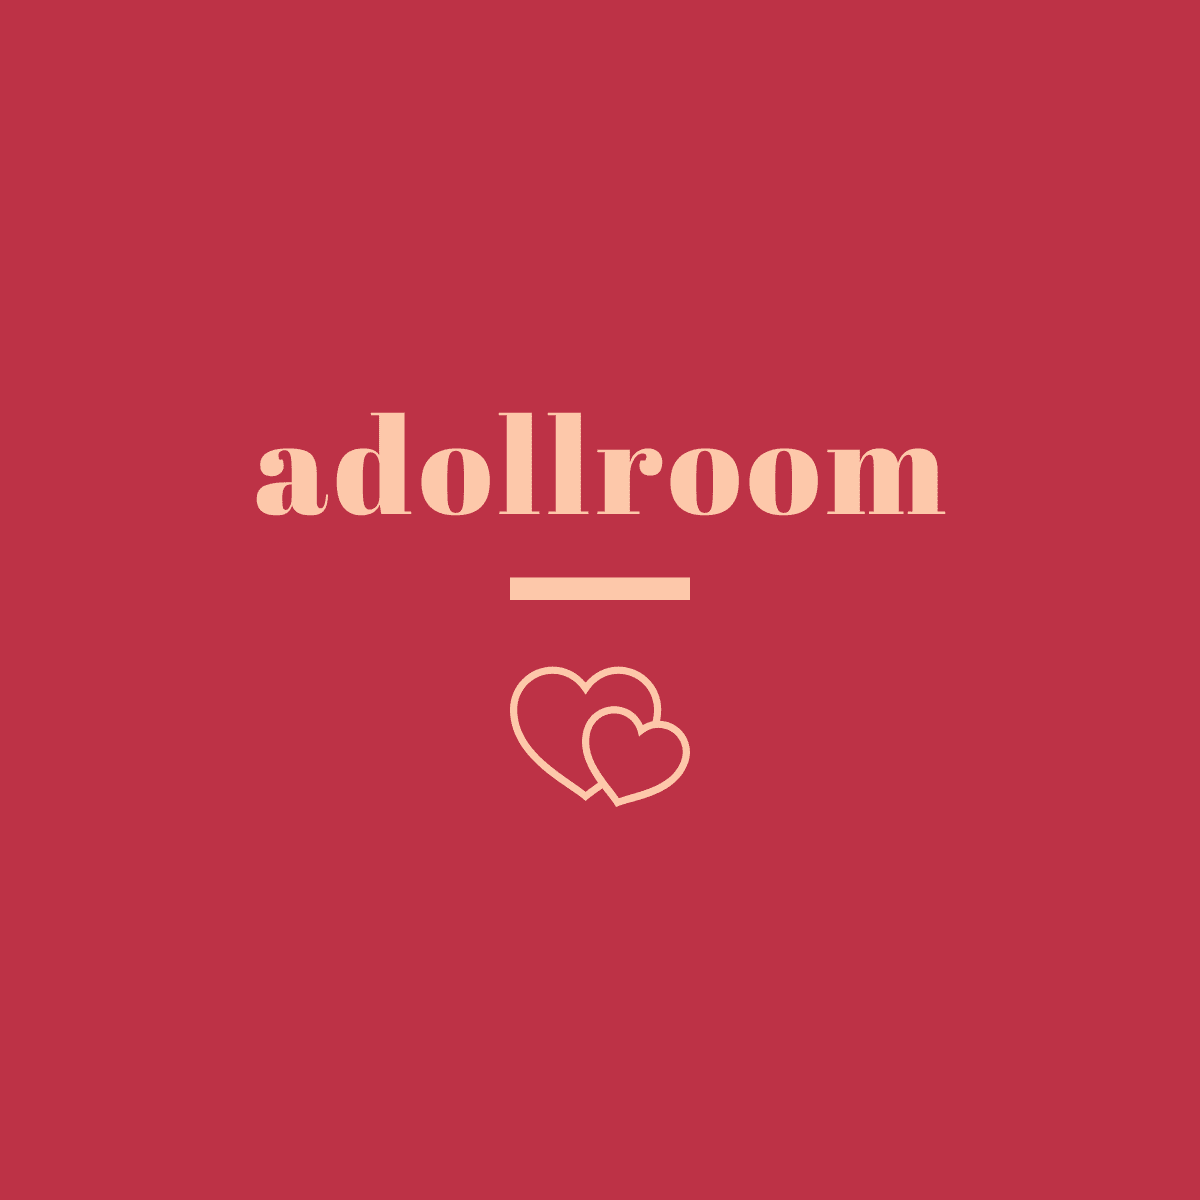 adollroom